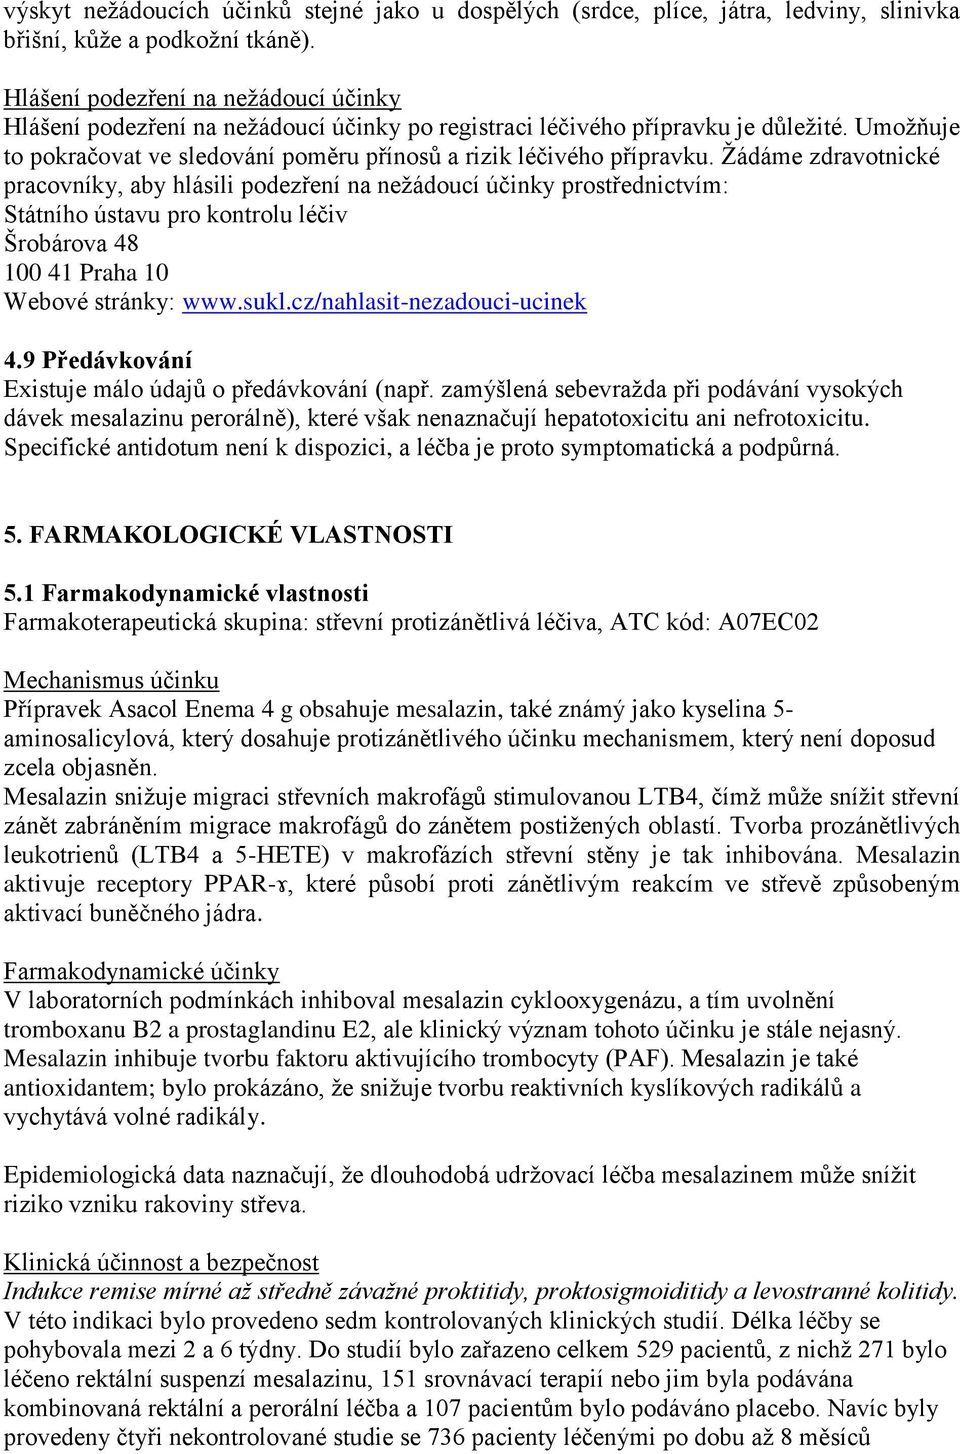 Žádáme zdravotnické pracovníky, aby hlásili podezření na nežádoucí účinky prostřednictvím: Státního ústavu pro kontrolu léčiv Šrobárova 48 100 41 Praha 10 Webové stránky: www.sukl.